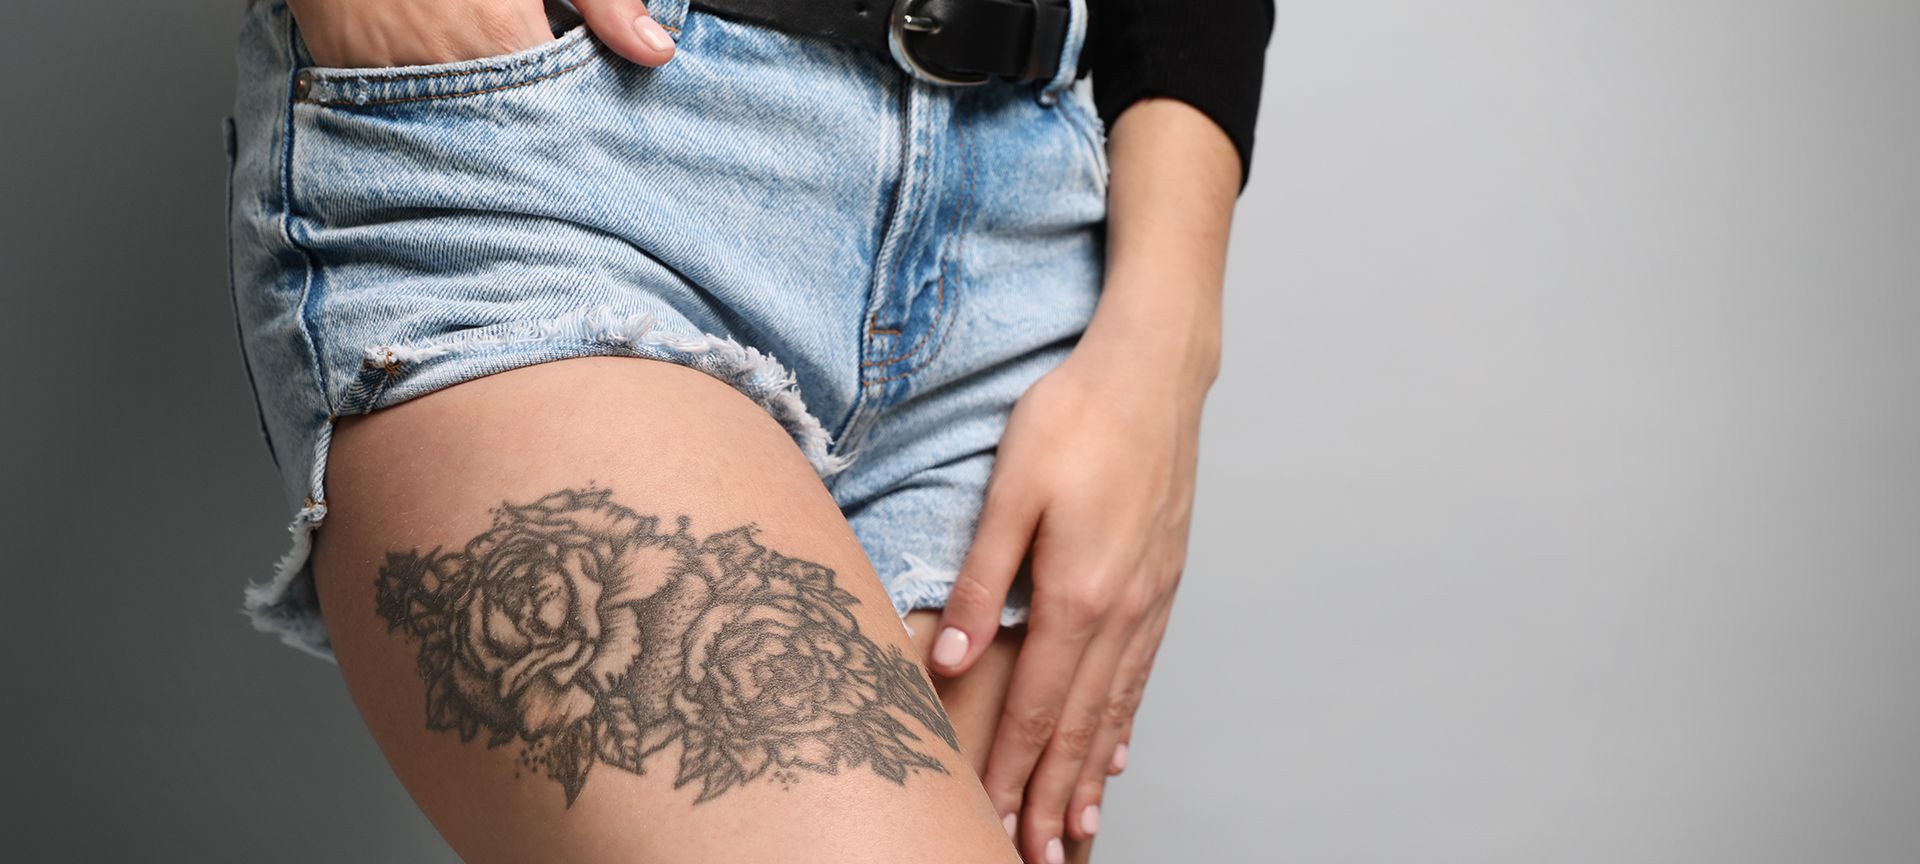 Ink Couture Tattoos San Antonio Austin | Premier Award Winning Tattoo Shop  | San Antonio Tattoo |